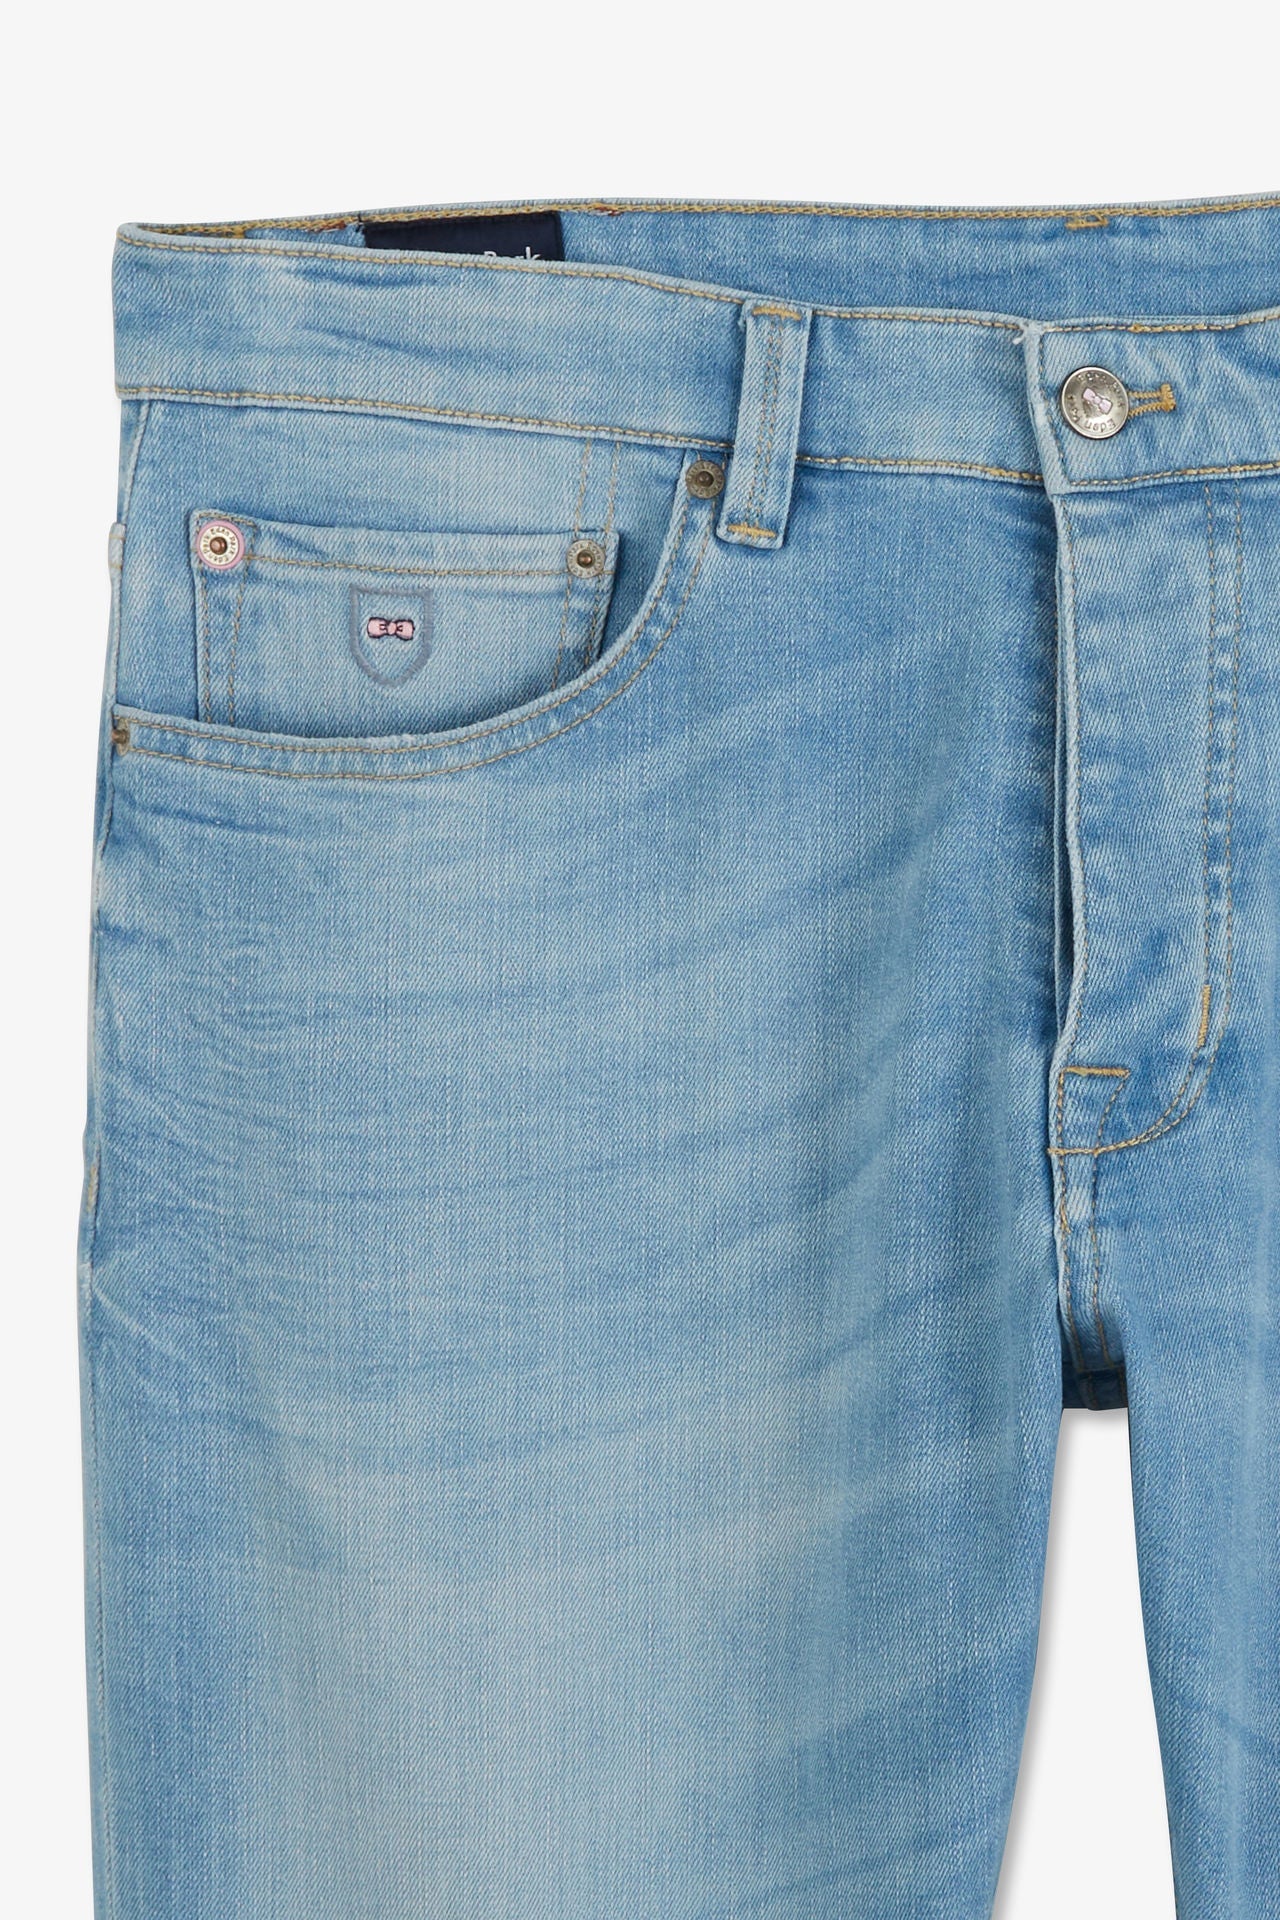 Pantalon bleu droit 5 poches - Image 6